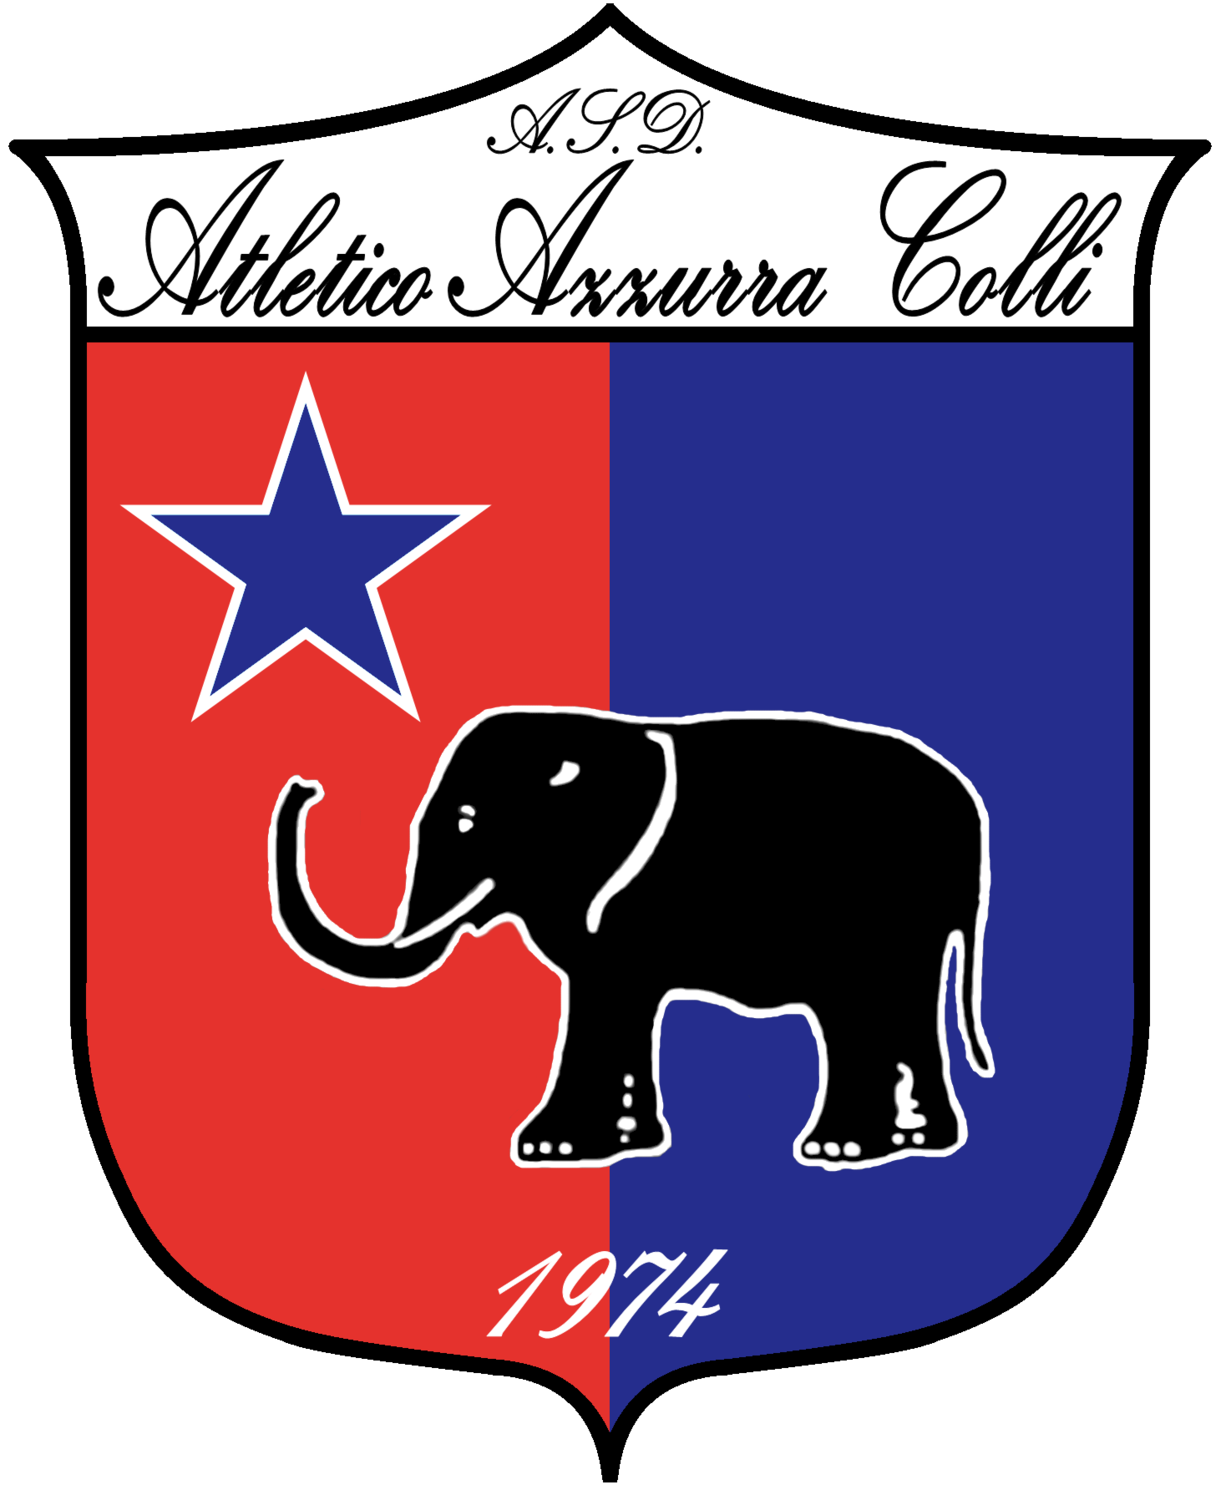 Wappen Atletico Azzurra Colli  82391